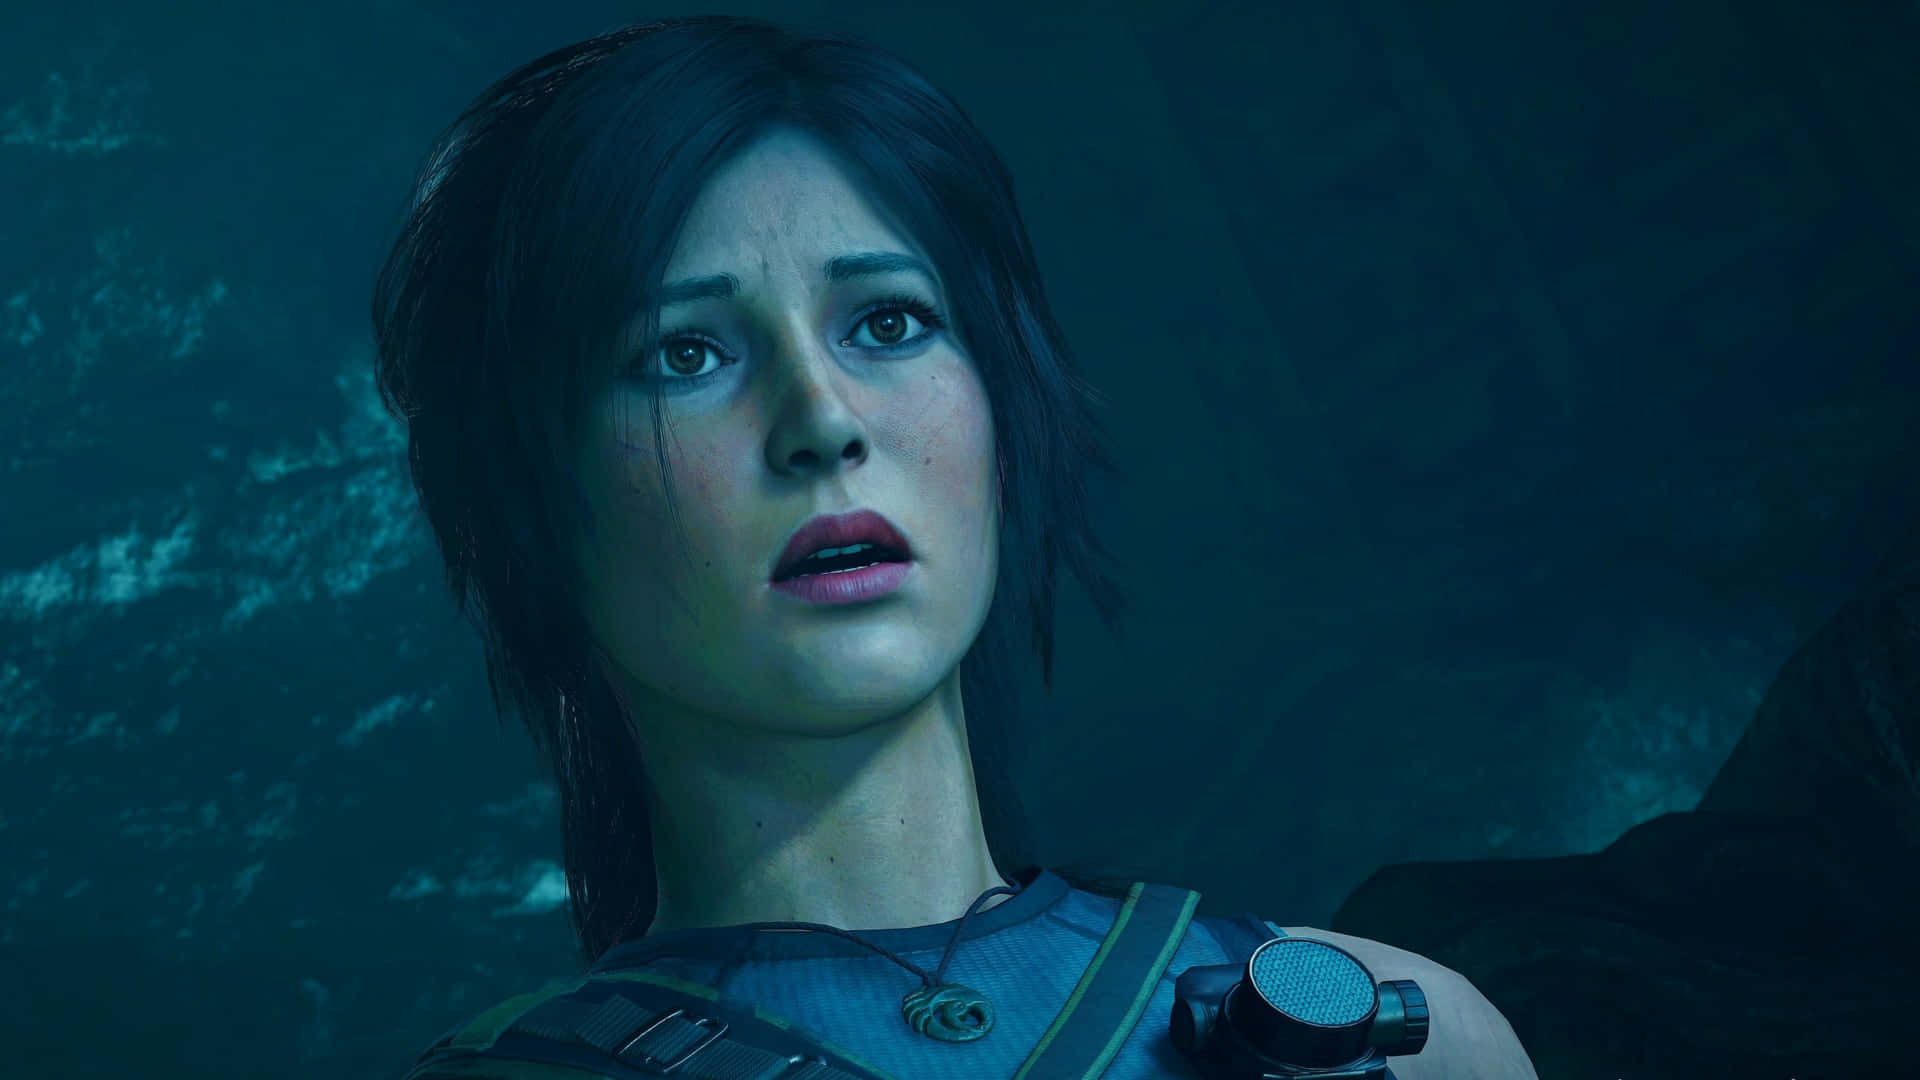 Leavventure Di Lara Croft Nell'ombra Di Tomb Raider